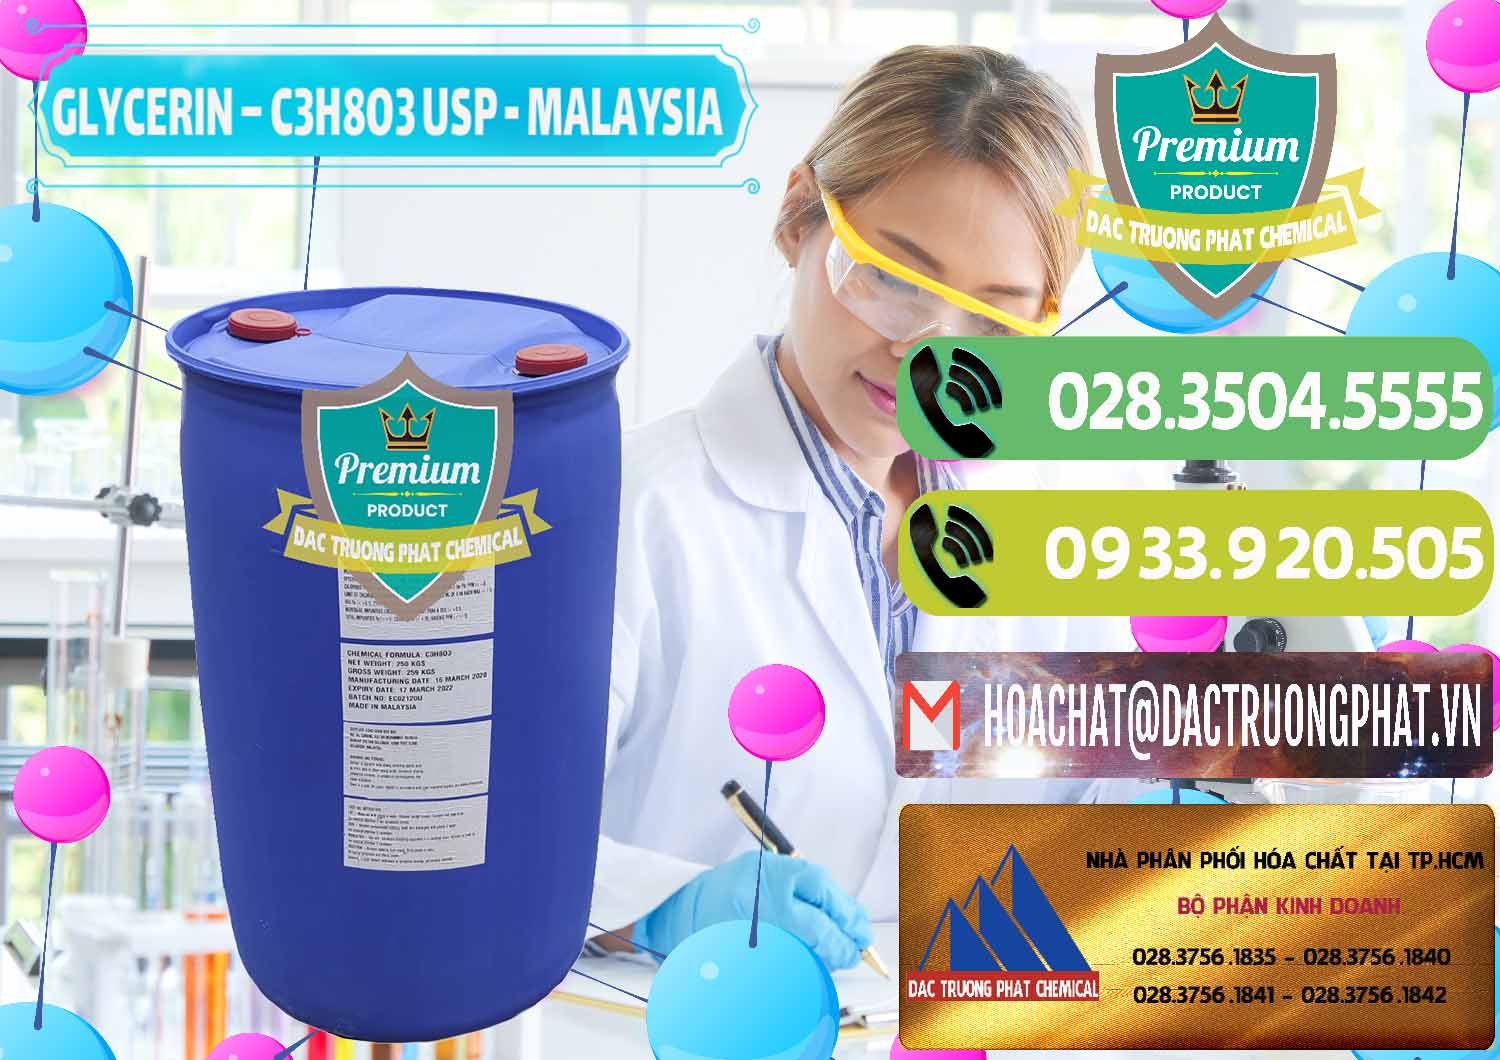 Cty chuyên bán - phân phối Glycerin – C3H8O3 USP Malaysia - 0233 - Chuyên cung cấp _ phân phối hóa chất tại TP.HCM - hoachatmientay.vn